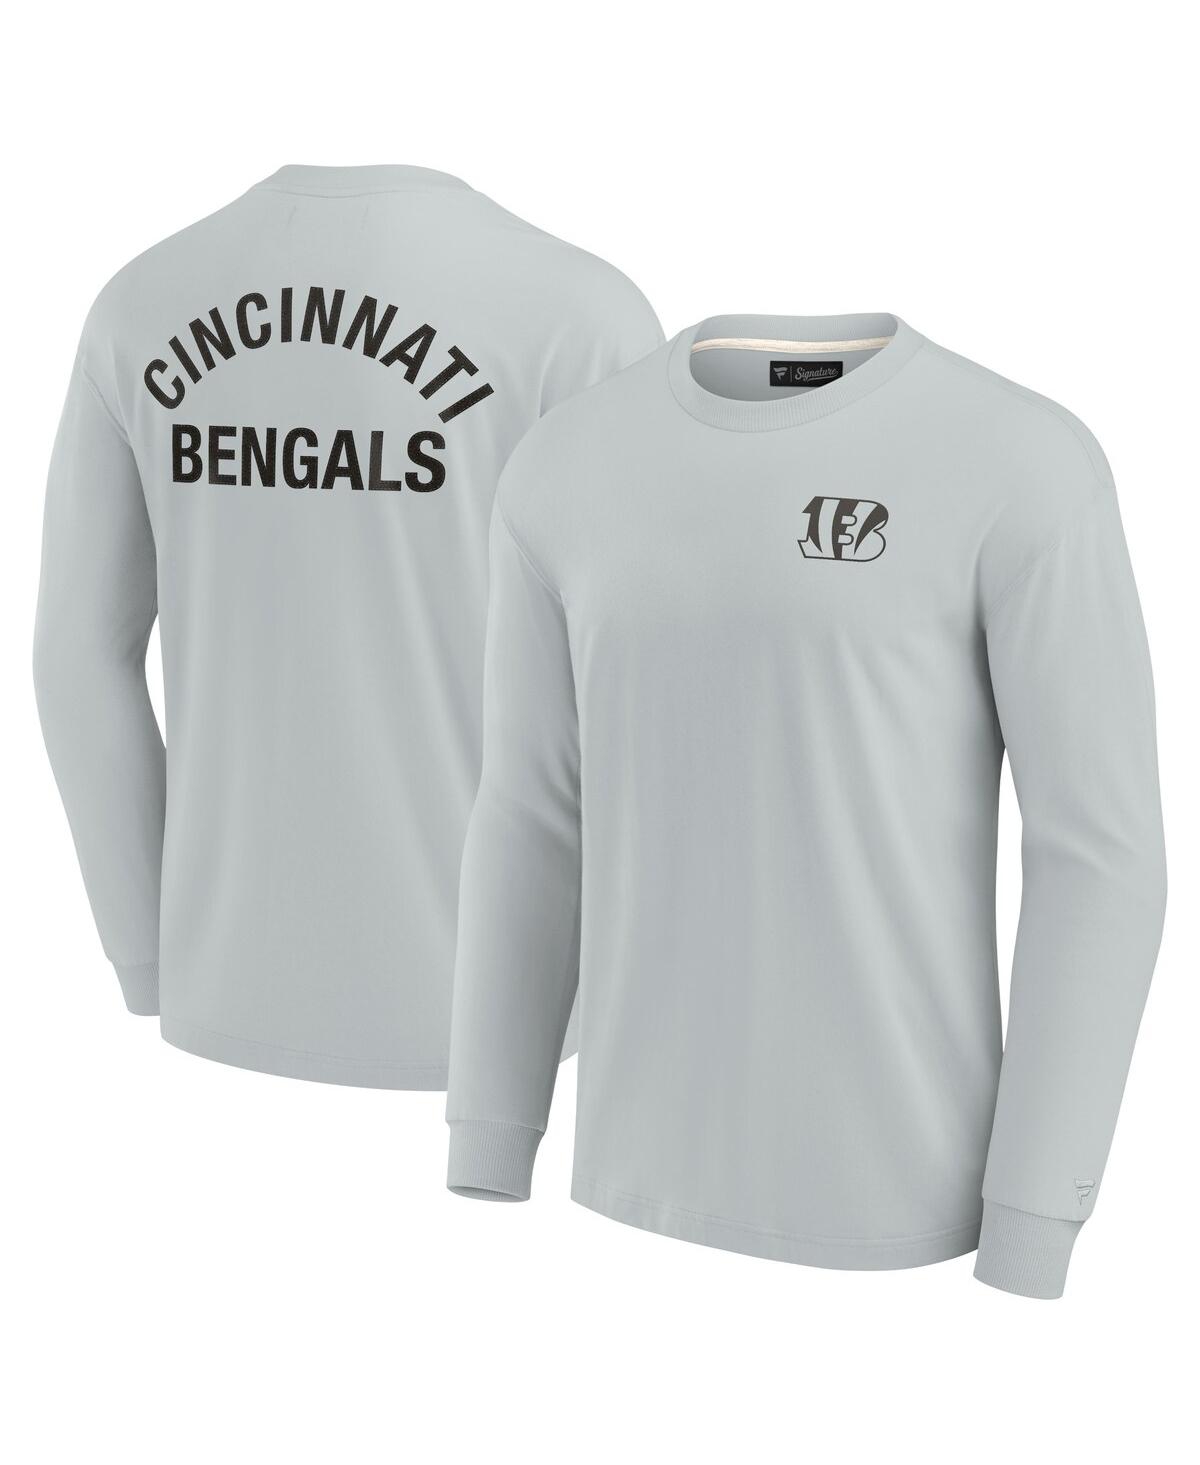 Men's and Women's Fanatics Signature Gray Cincinnati Bengals Super Soft Long Sleeve T-shirt - Gray